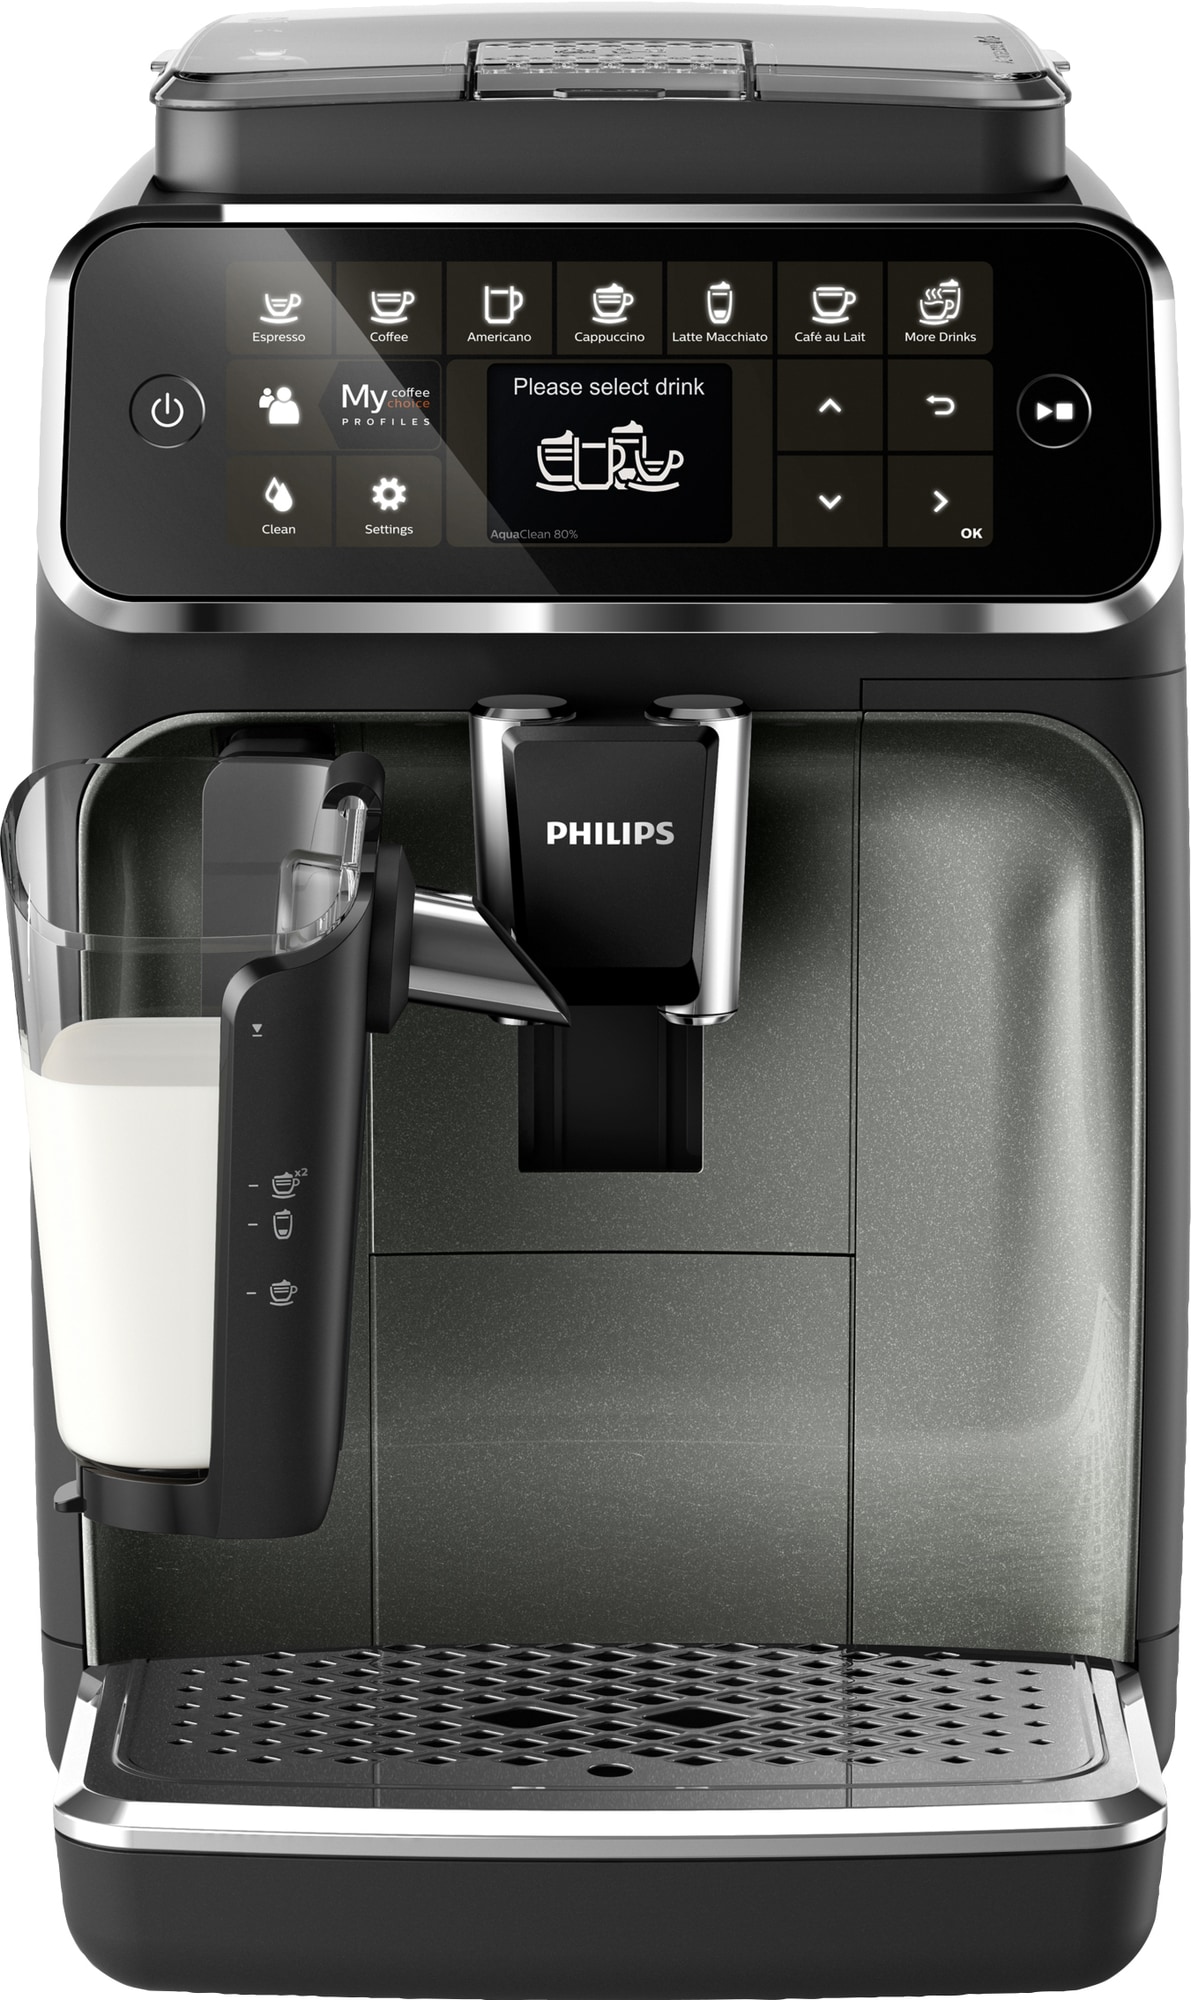 Glimte killing Skråstreg Philips espressomaskine EP434970 | Elgiganten